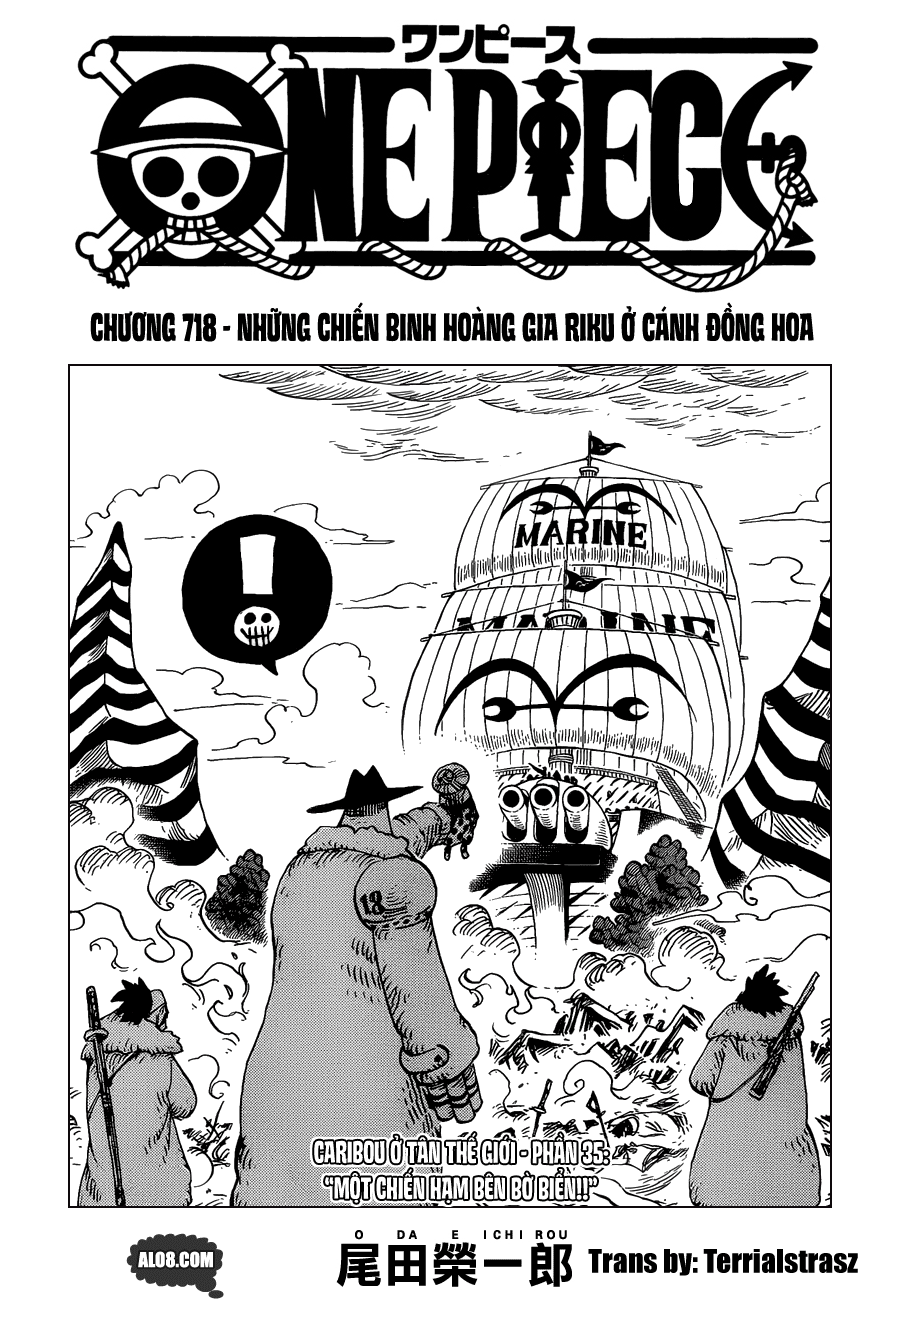 One Piece Chapter 718: Những chiến binh hoàng gia Riku ở cánh đồng hoa 001